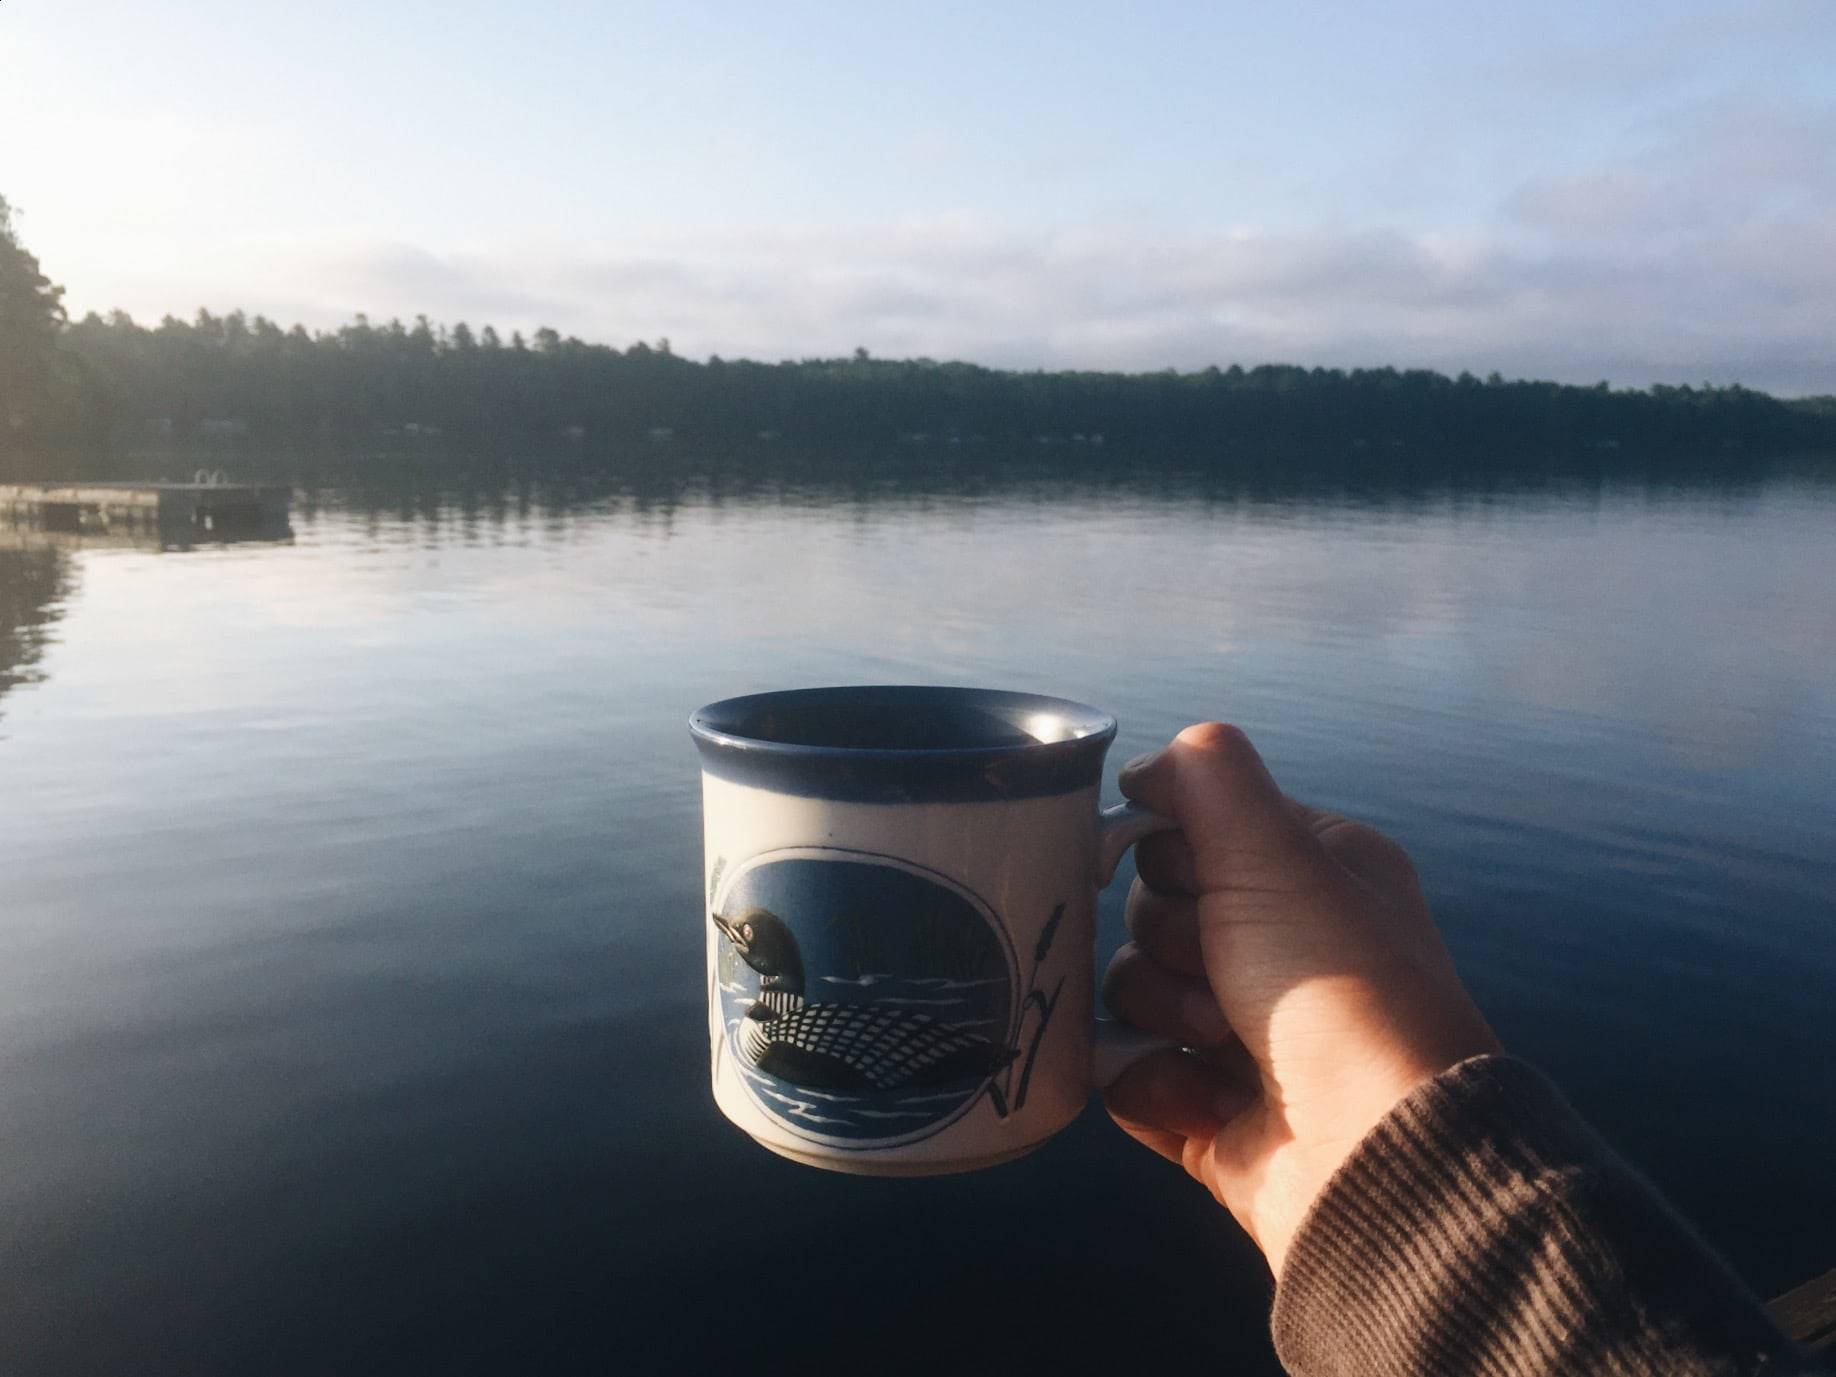 Hand holding a mug on a lake.